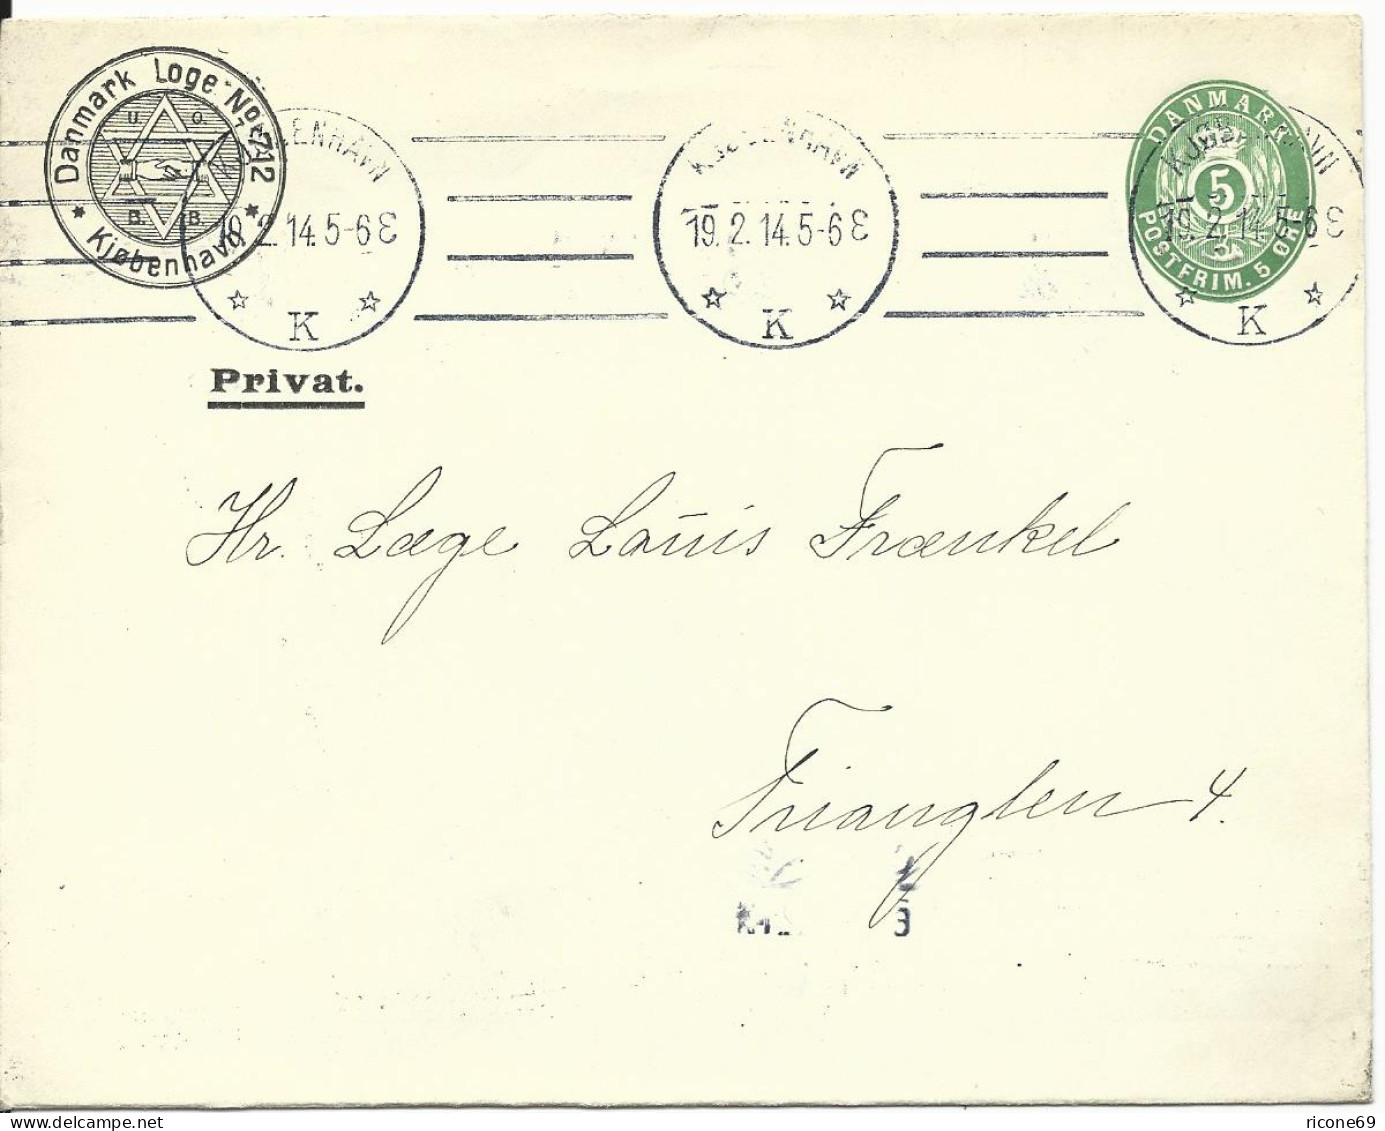 Dänemark 1914, 5 öre Ganzsache Brief M. Danmark Loge No.712 Judaika Zudruck - Jewish